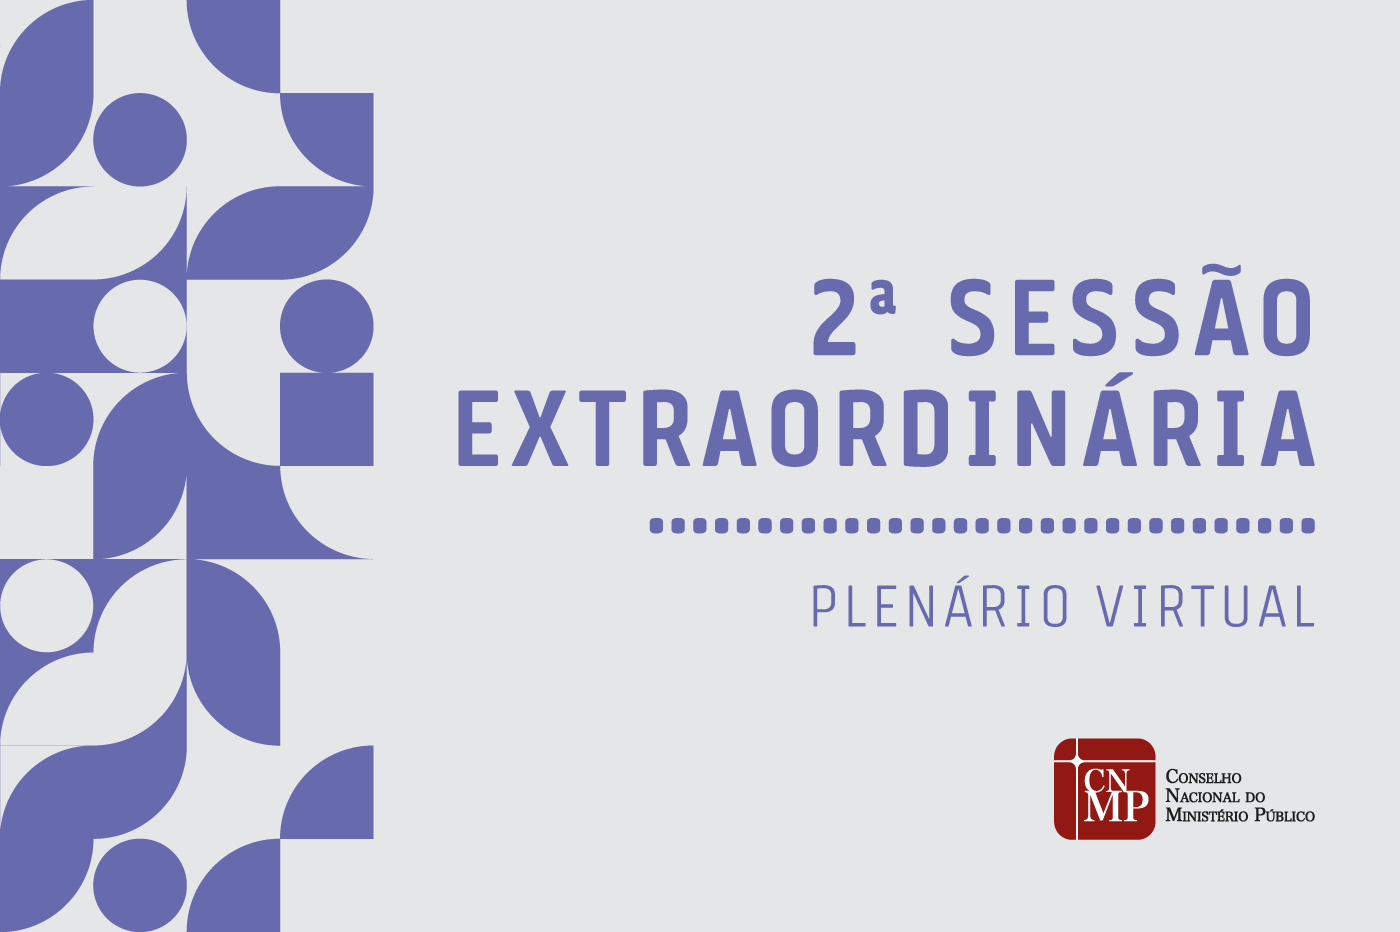 Plenário Virtual: CNMP publica a pauta da sessão extraordinária de 15 de dezembro     